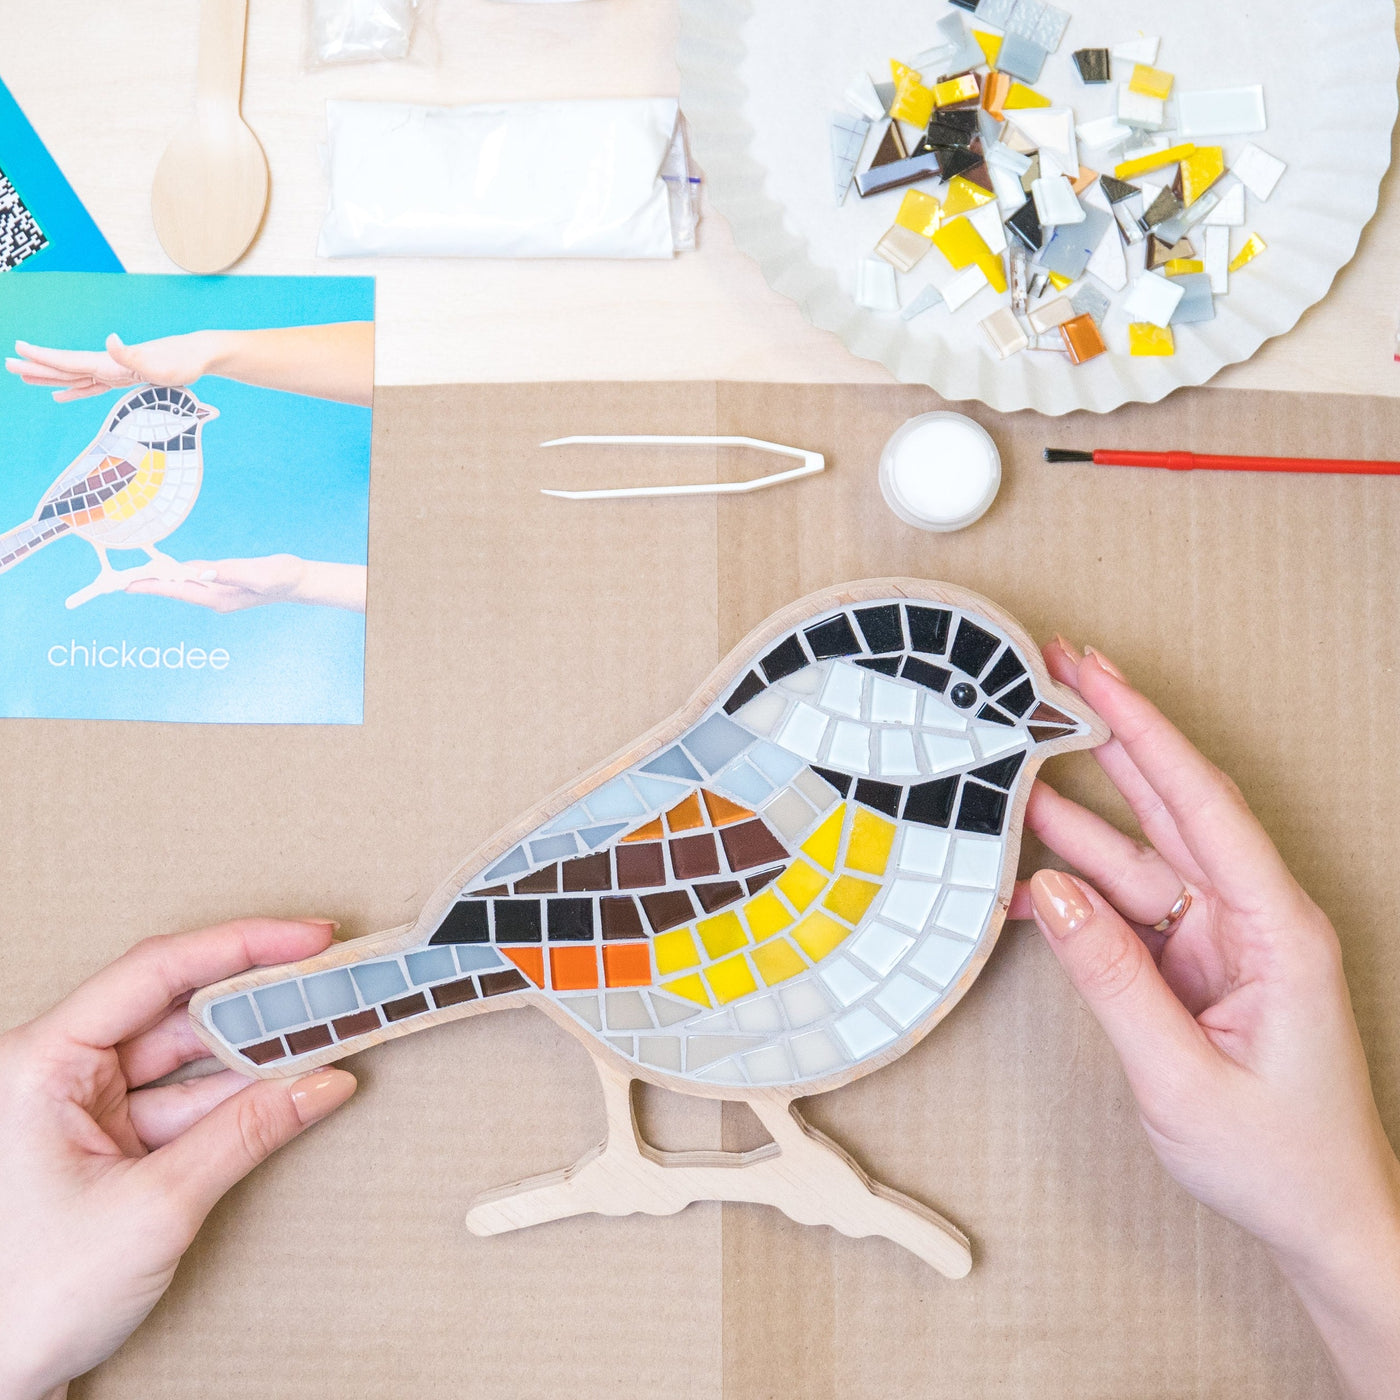 Chickadee silhouette glass mosaic DIY kit